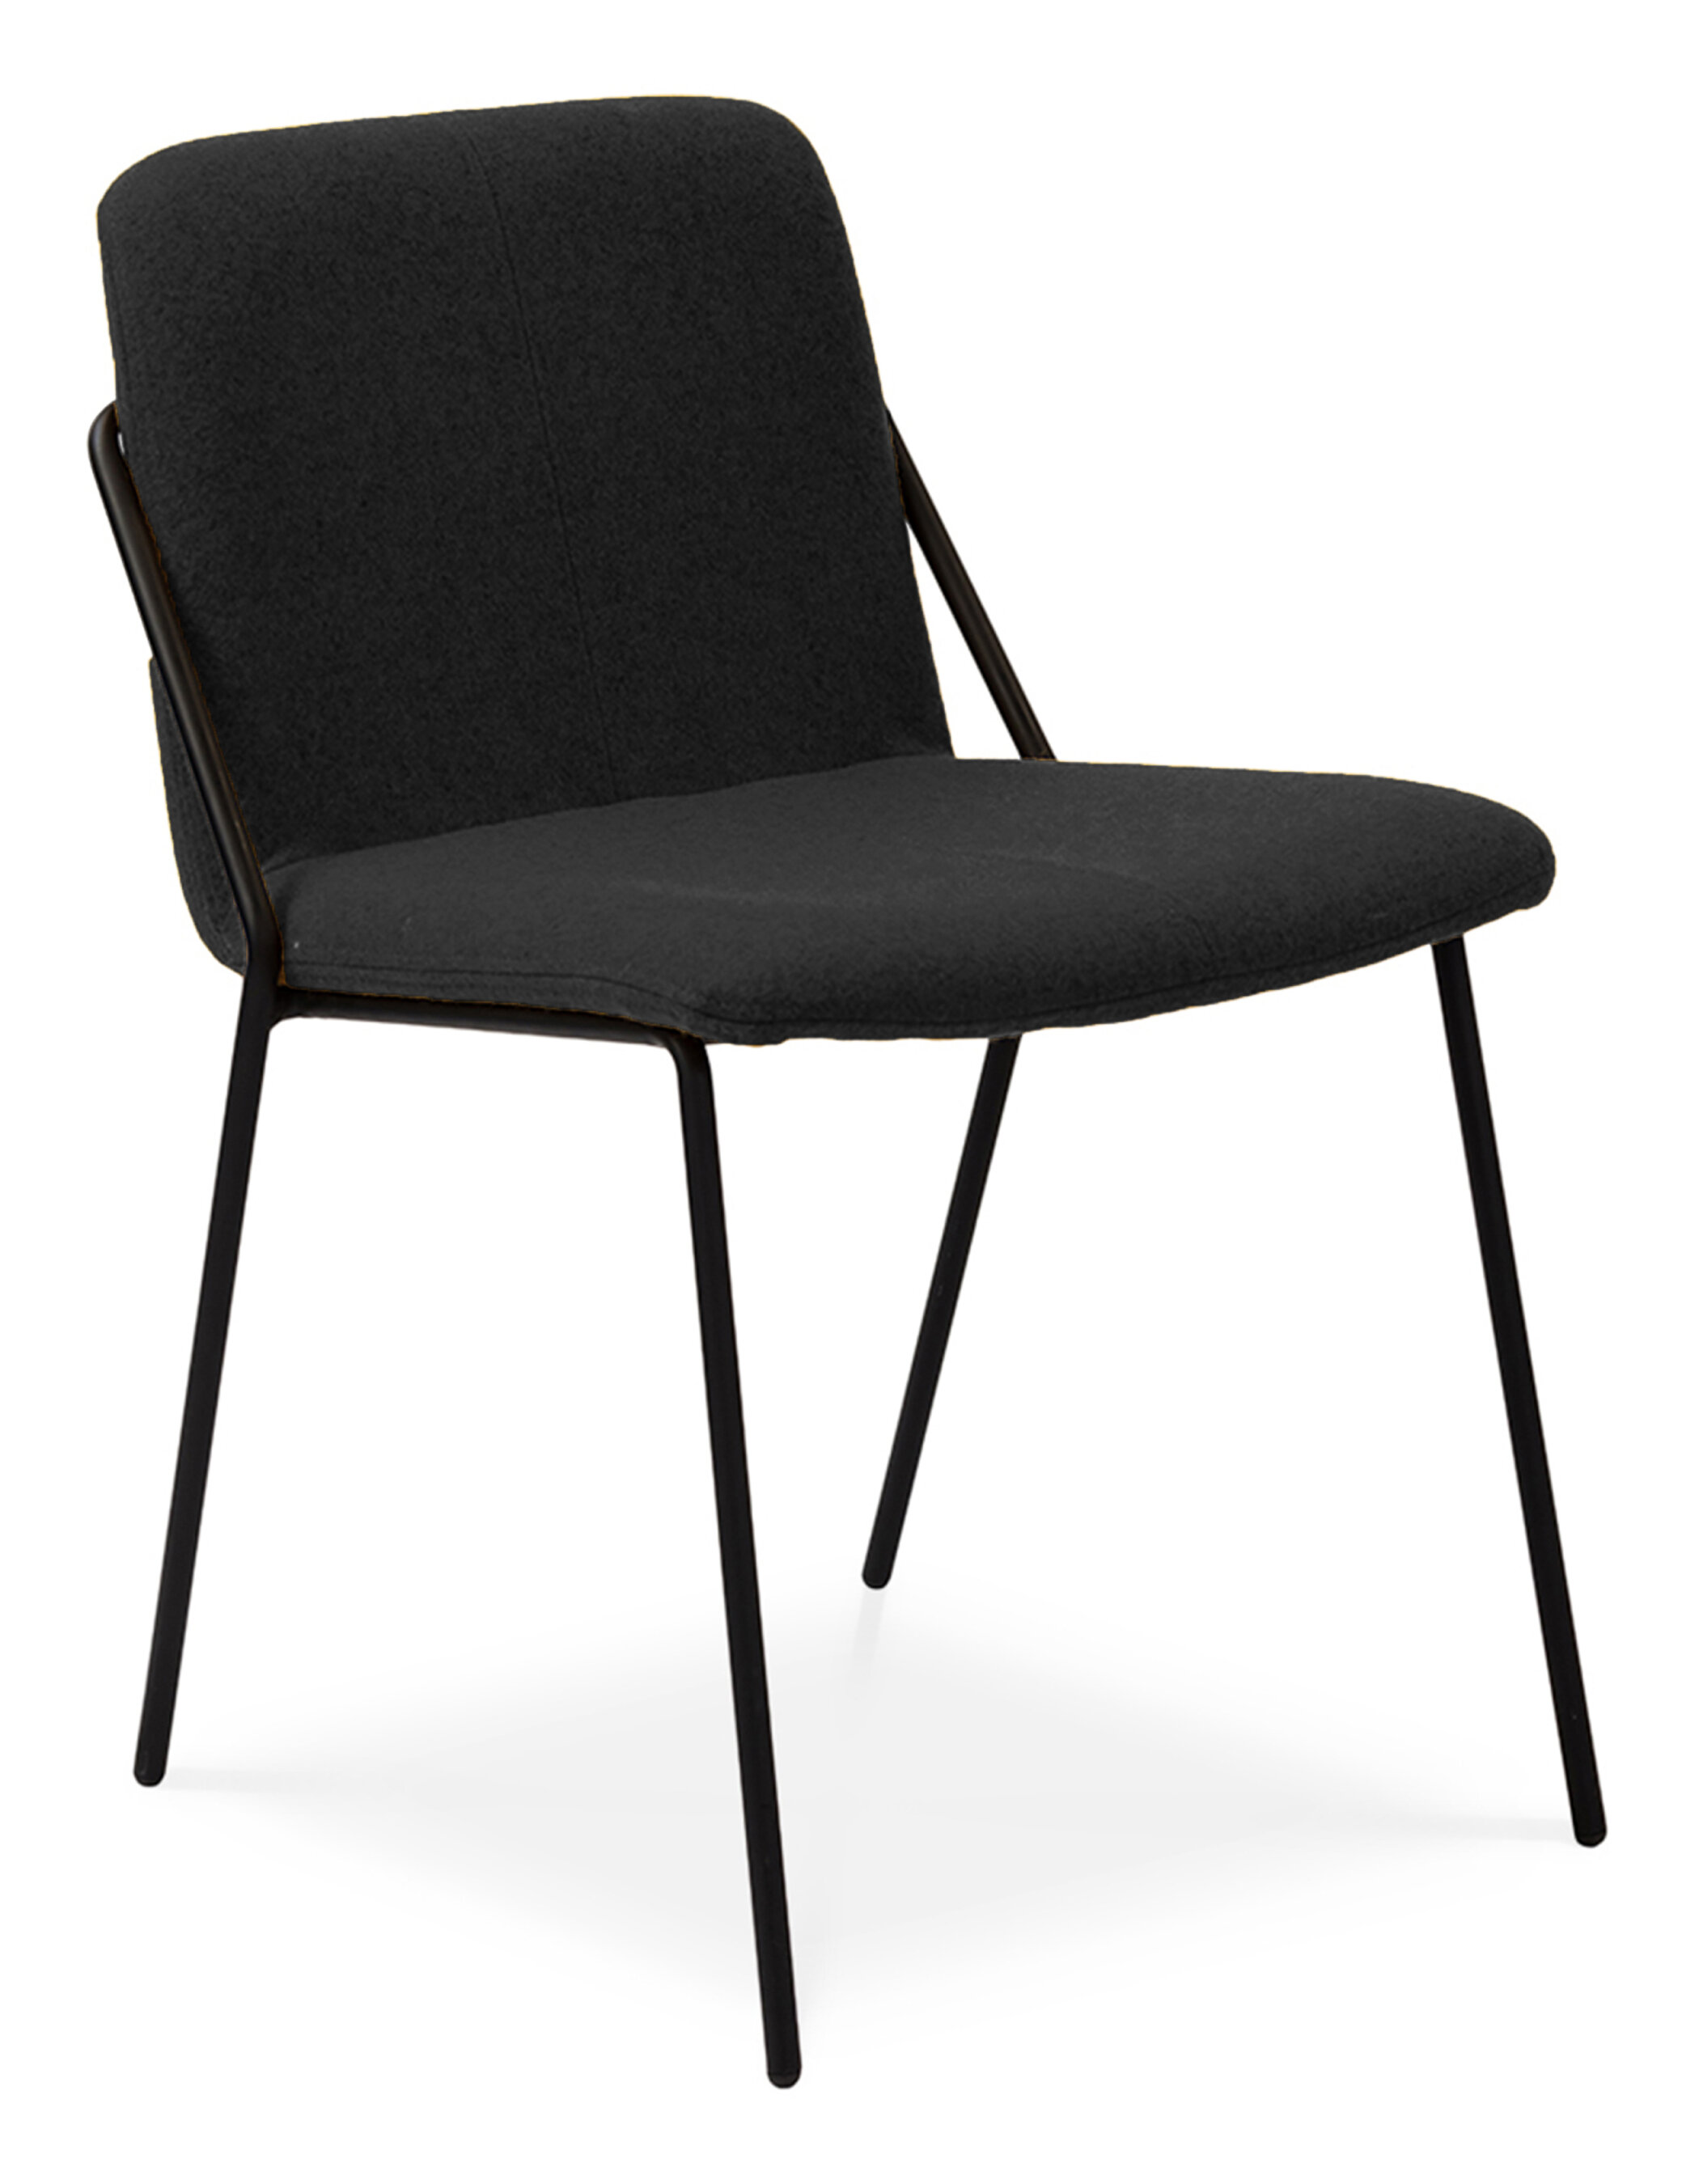 WS - Sling Side chair - ERA CSE14 FORWARD